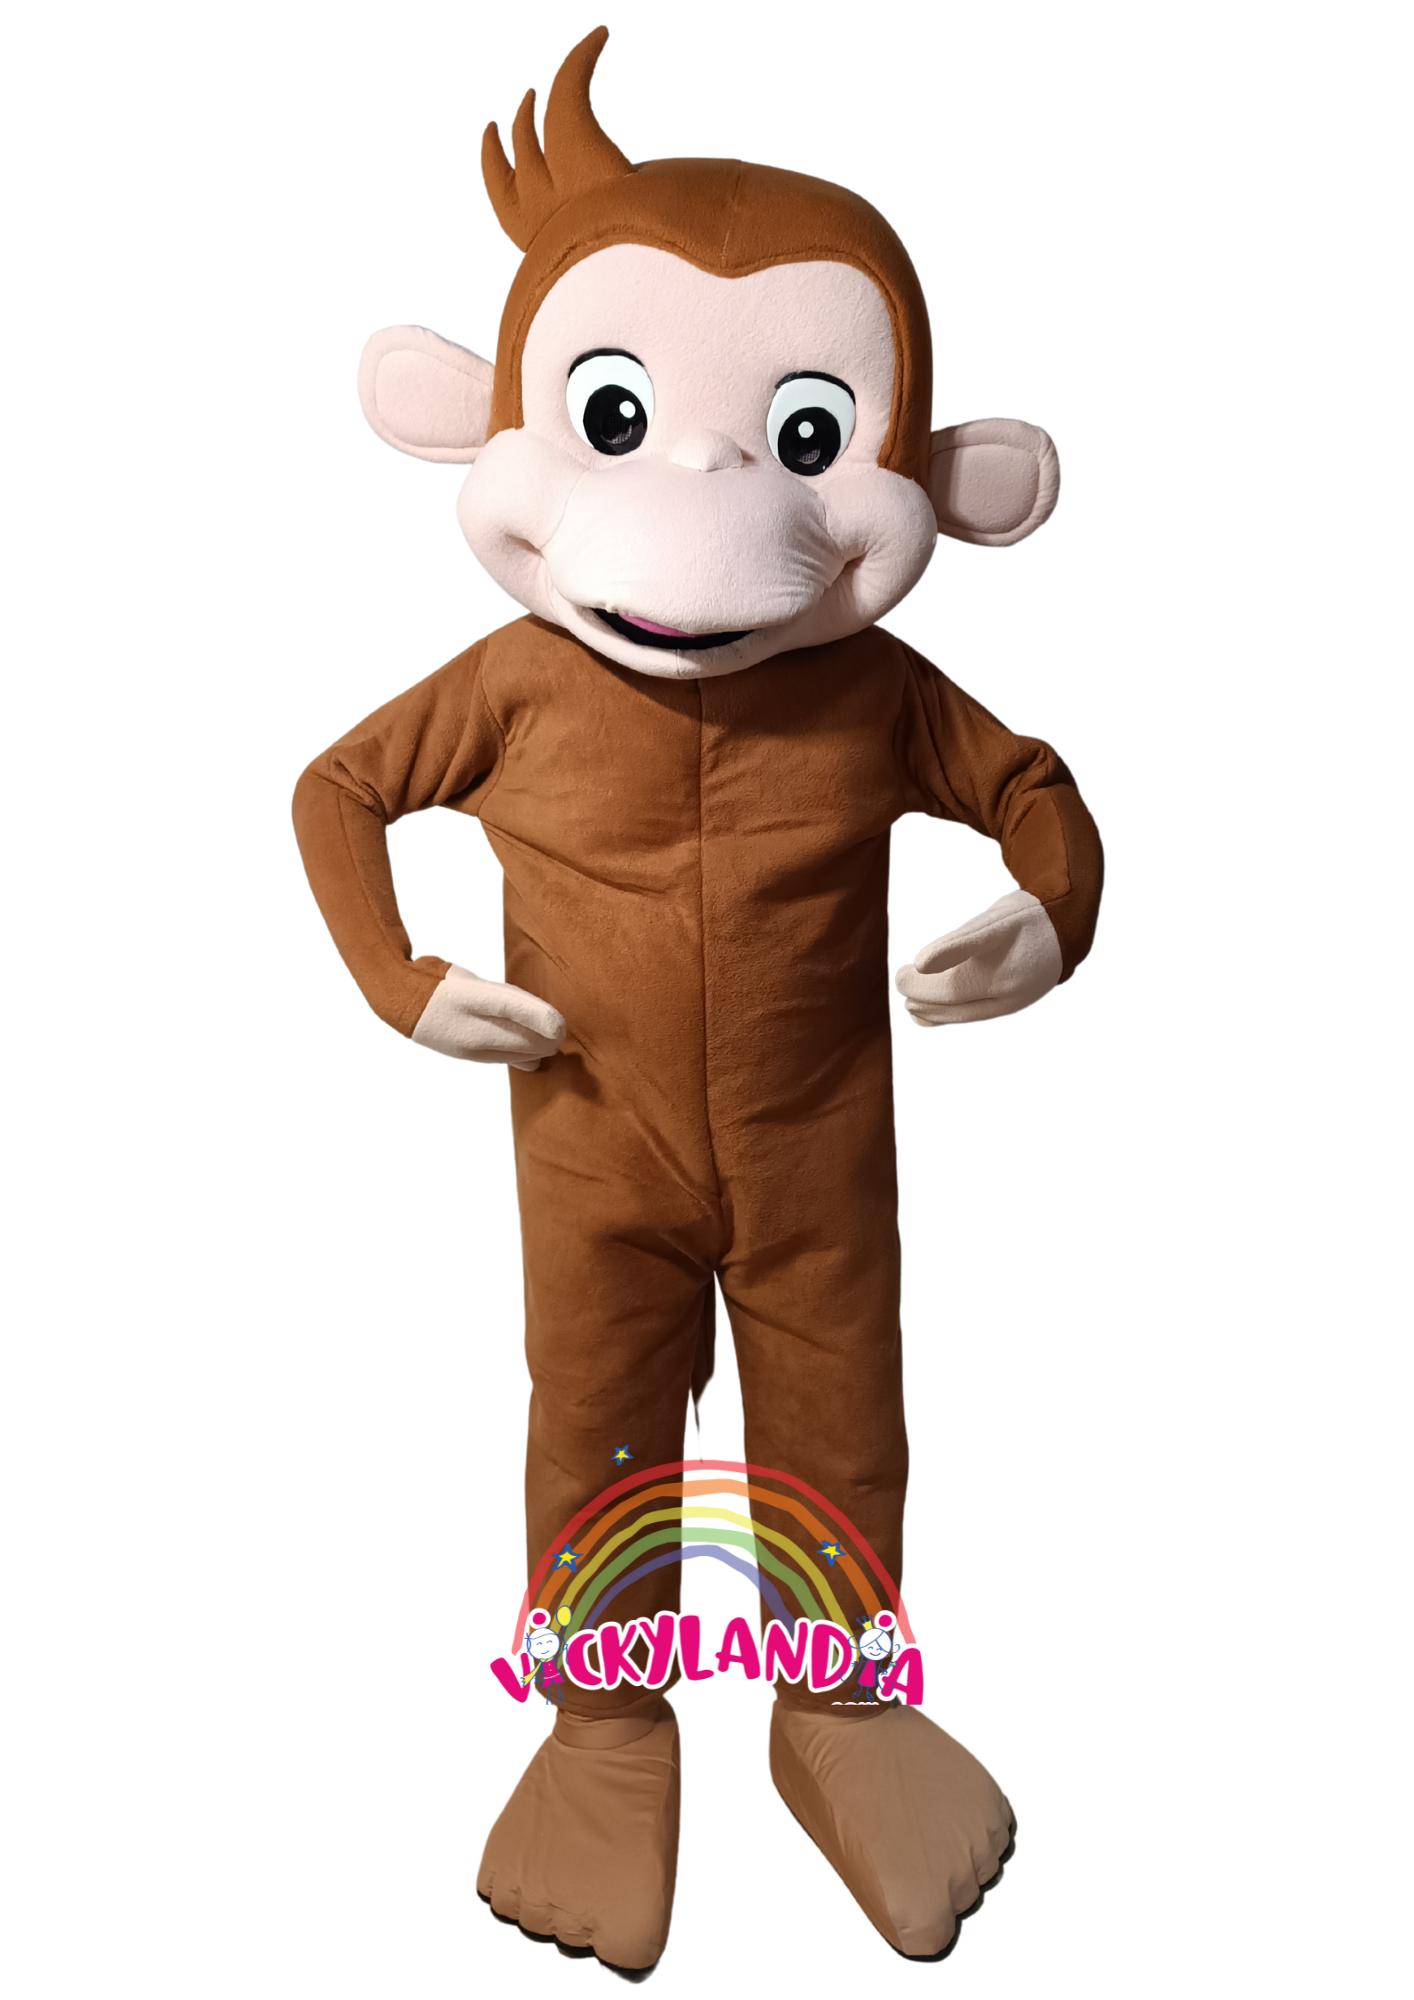 Descubre la magia de nuestro muñeco publicitario de Mono en Vickylandia. Son disfraces cabezones perfectos para fiestas infantiles, shows, cumpleaños, estrategias publicitarias, carnavales, fiestas patronales, espectáculos, cabalgatas y cualquier tipo de evento